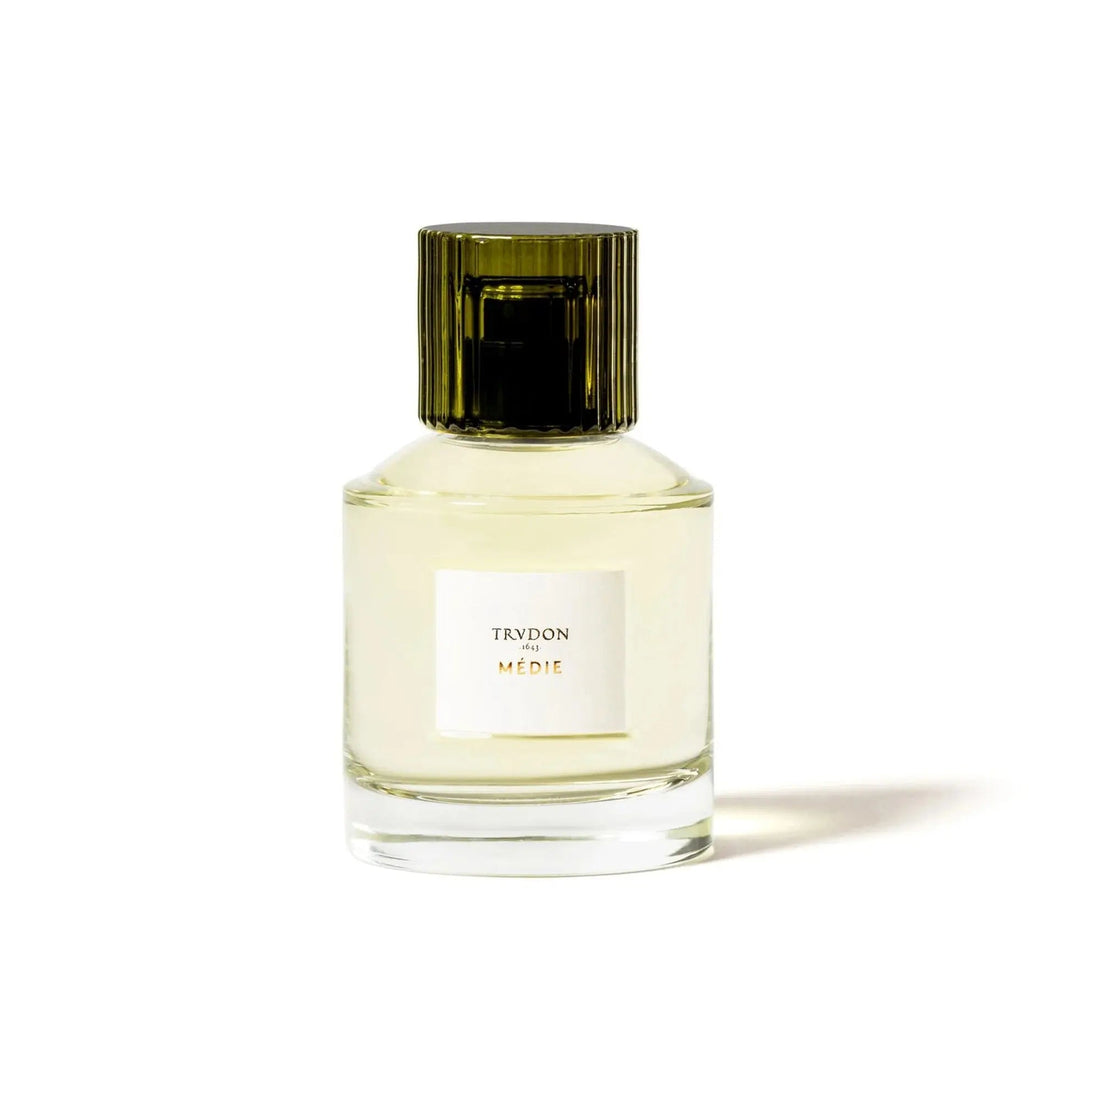 Trudon Medie Eau de parfum - 100 ml